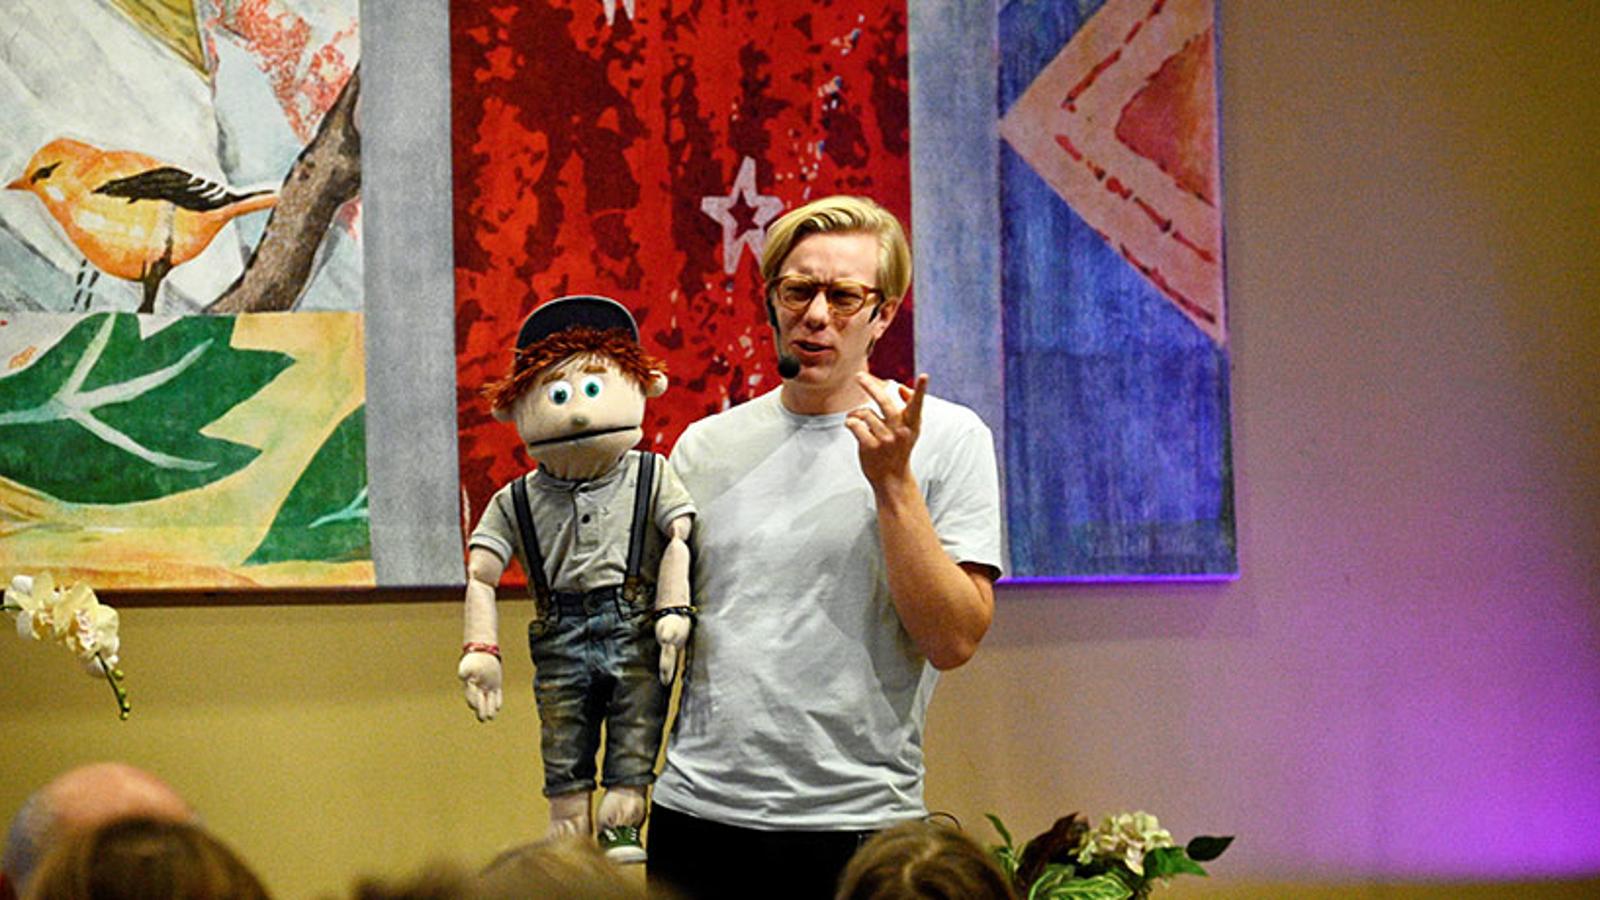 Gabriel med sin docka Åsskar under en föreställning.